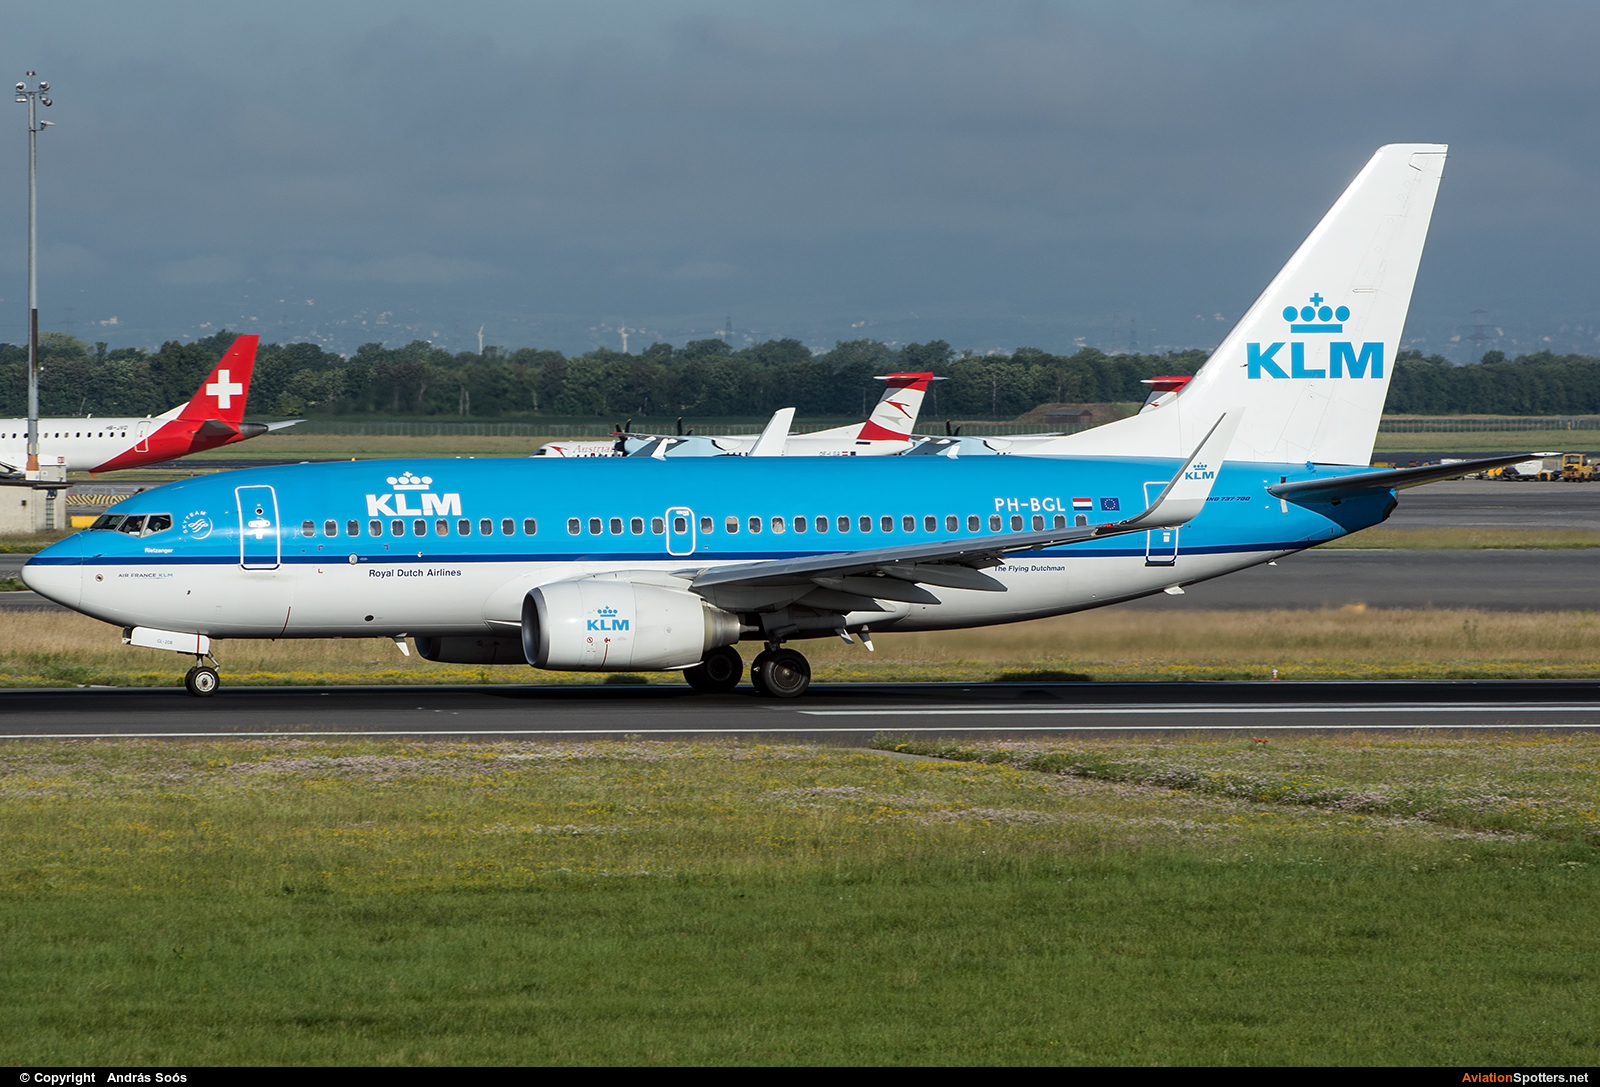 KLM  -  737-700  (PH-BGL) By András Soós (sas1965)